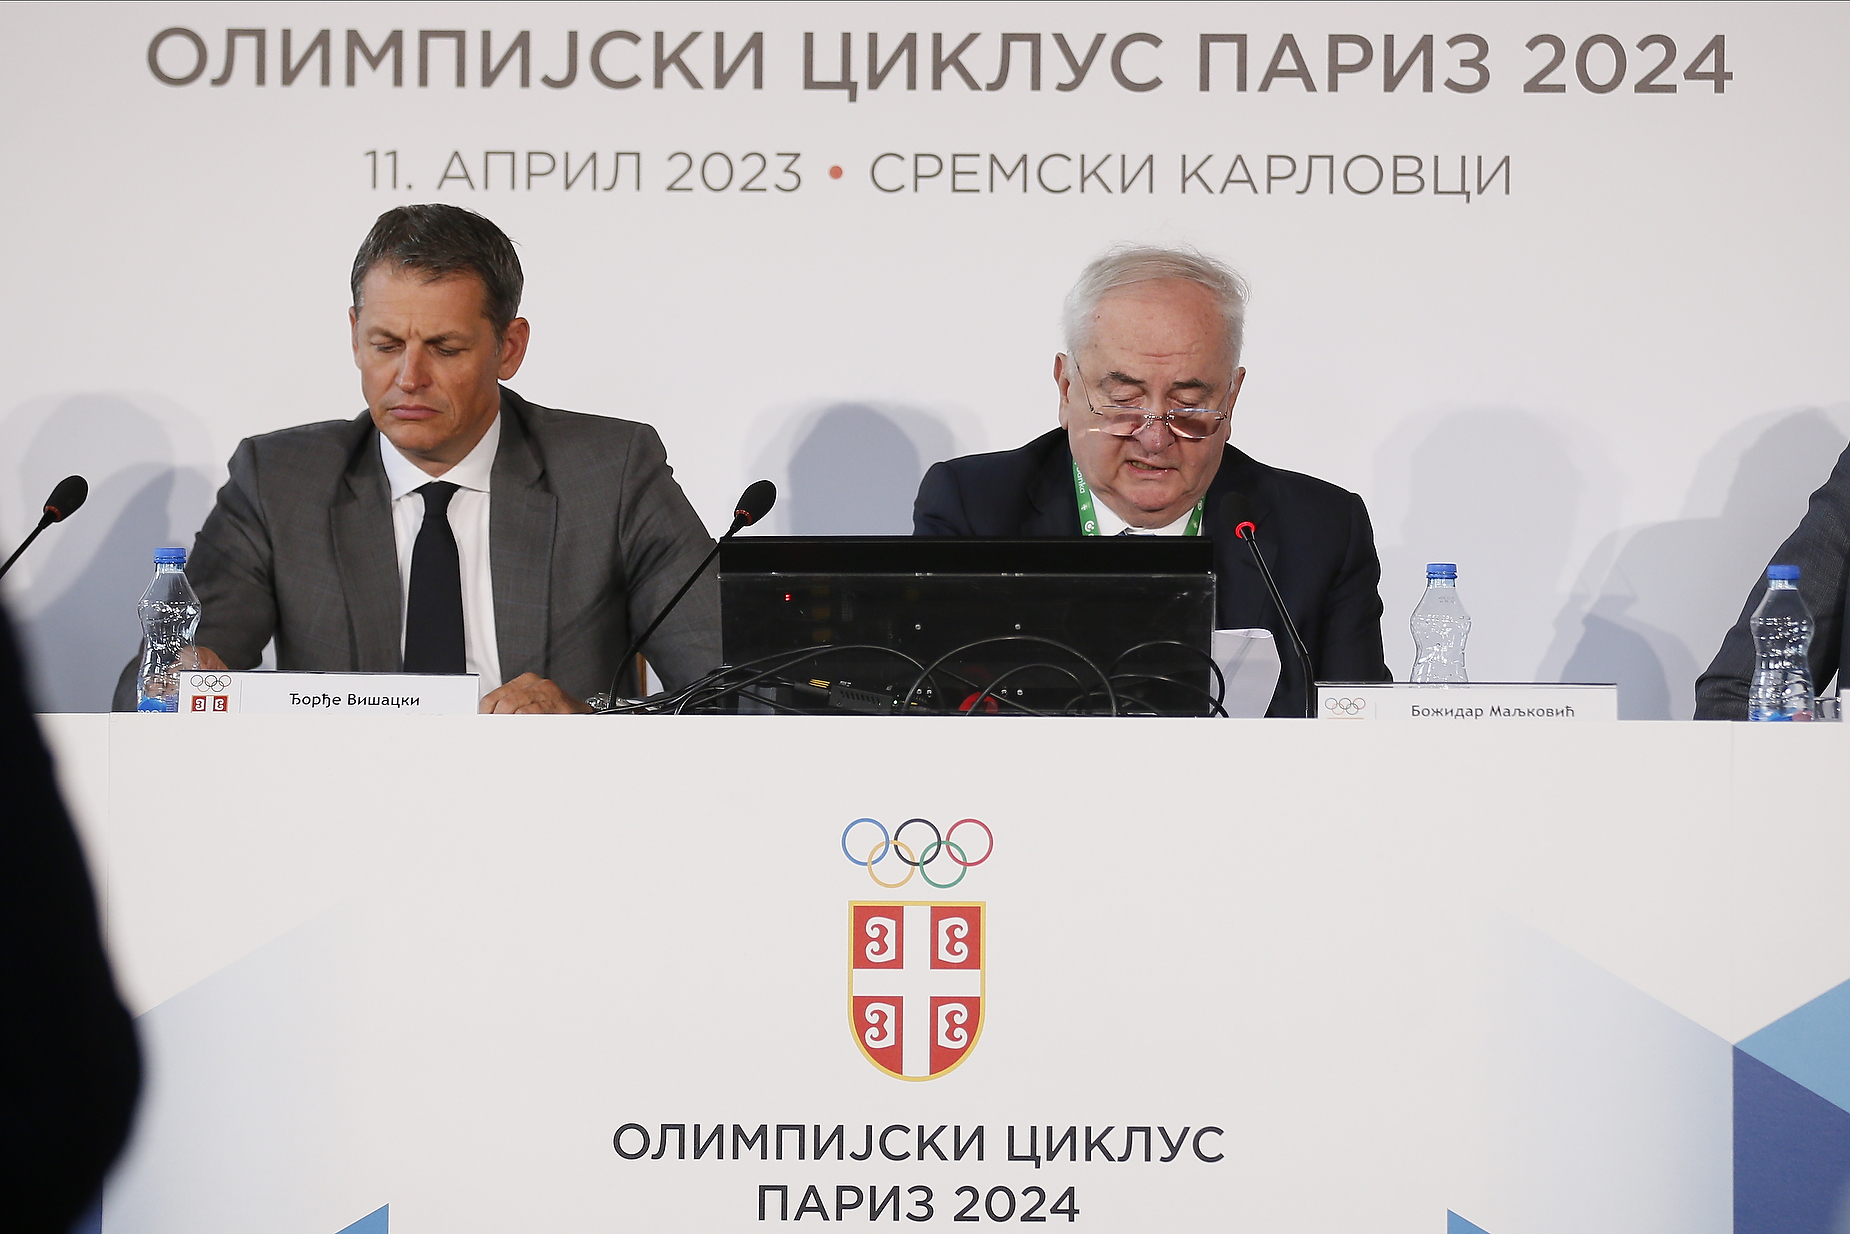  sednica Skupštine Olimpijskog komiteta Srbije 